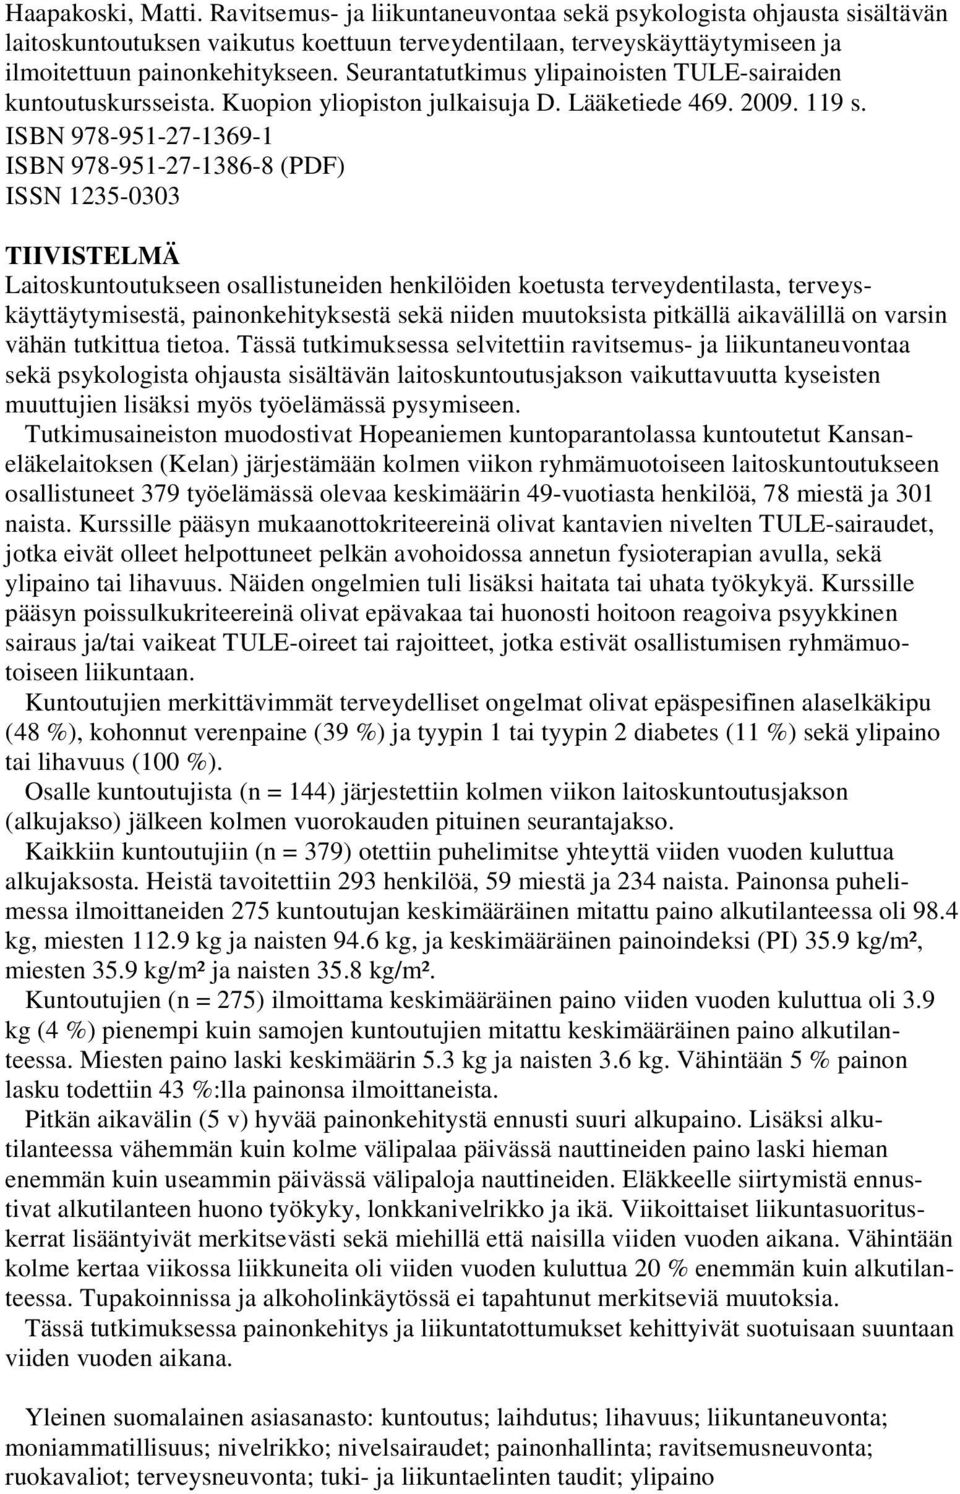 Seurantatutkimus ylipainoisten TULE-sairaiden kuntoutuskursseista. Kuopion yliopiston julkaisuja D. Lääketiede 469. 2009. 119 s.